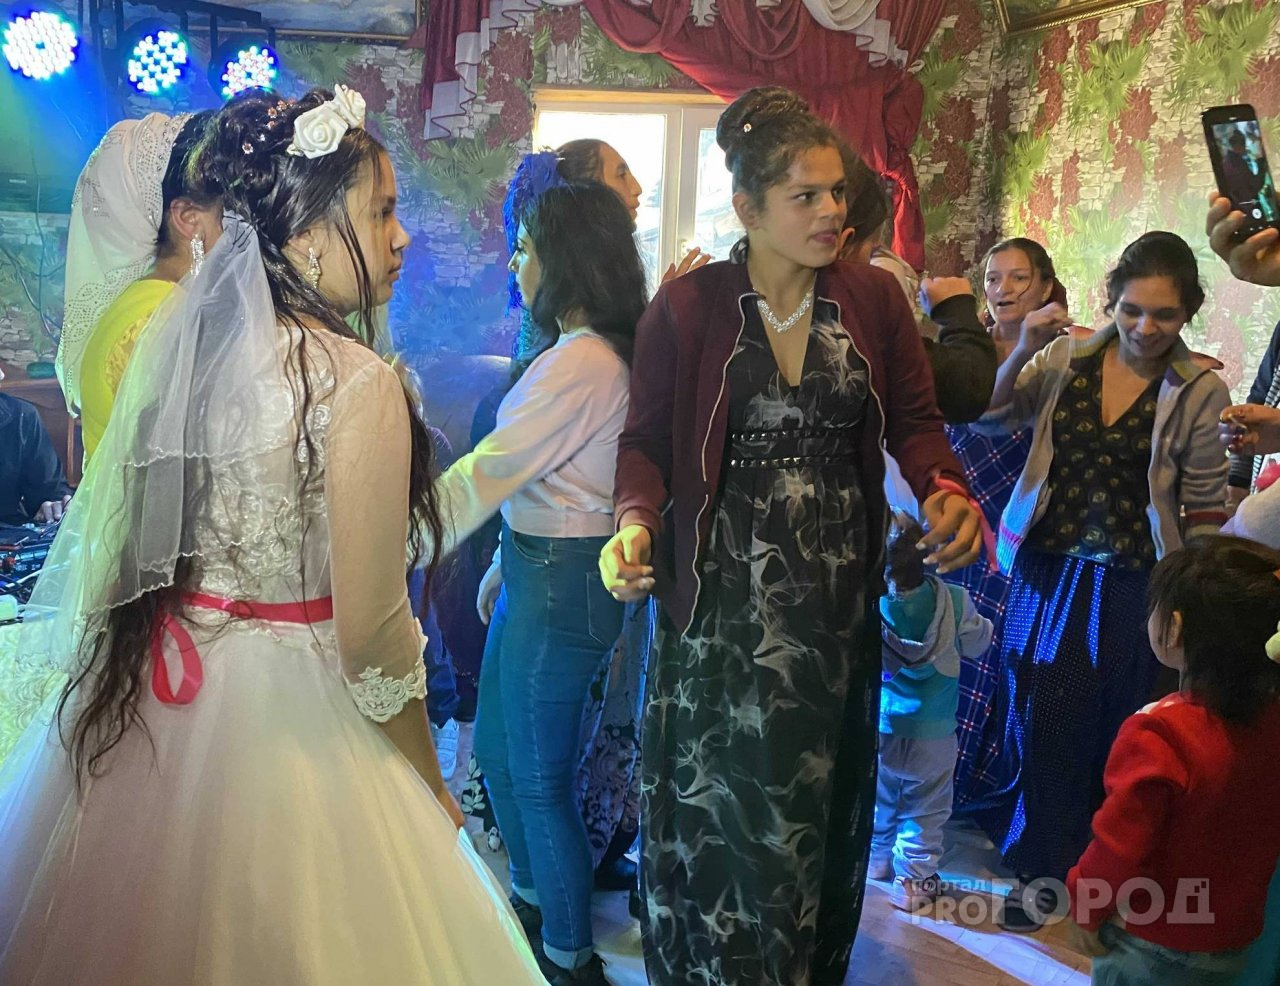 Как играют цыганские свадьбы в Чебоксарах: во сколько выходят замуж, чтопринято дарить и почему не